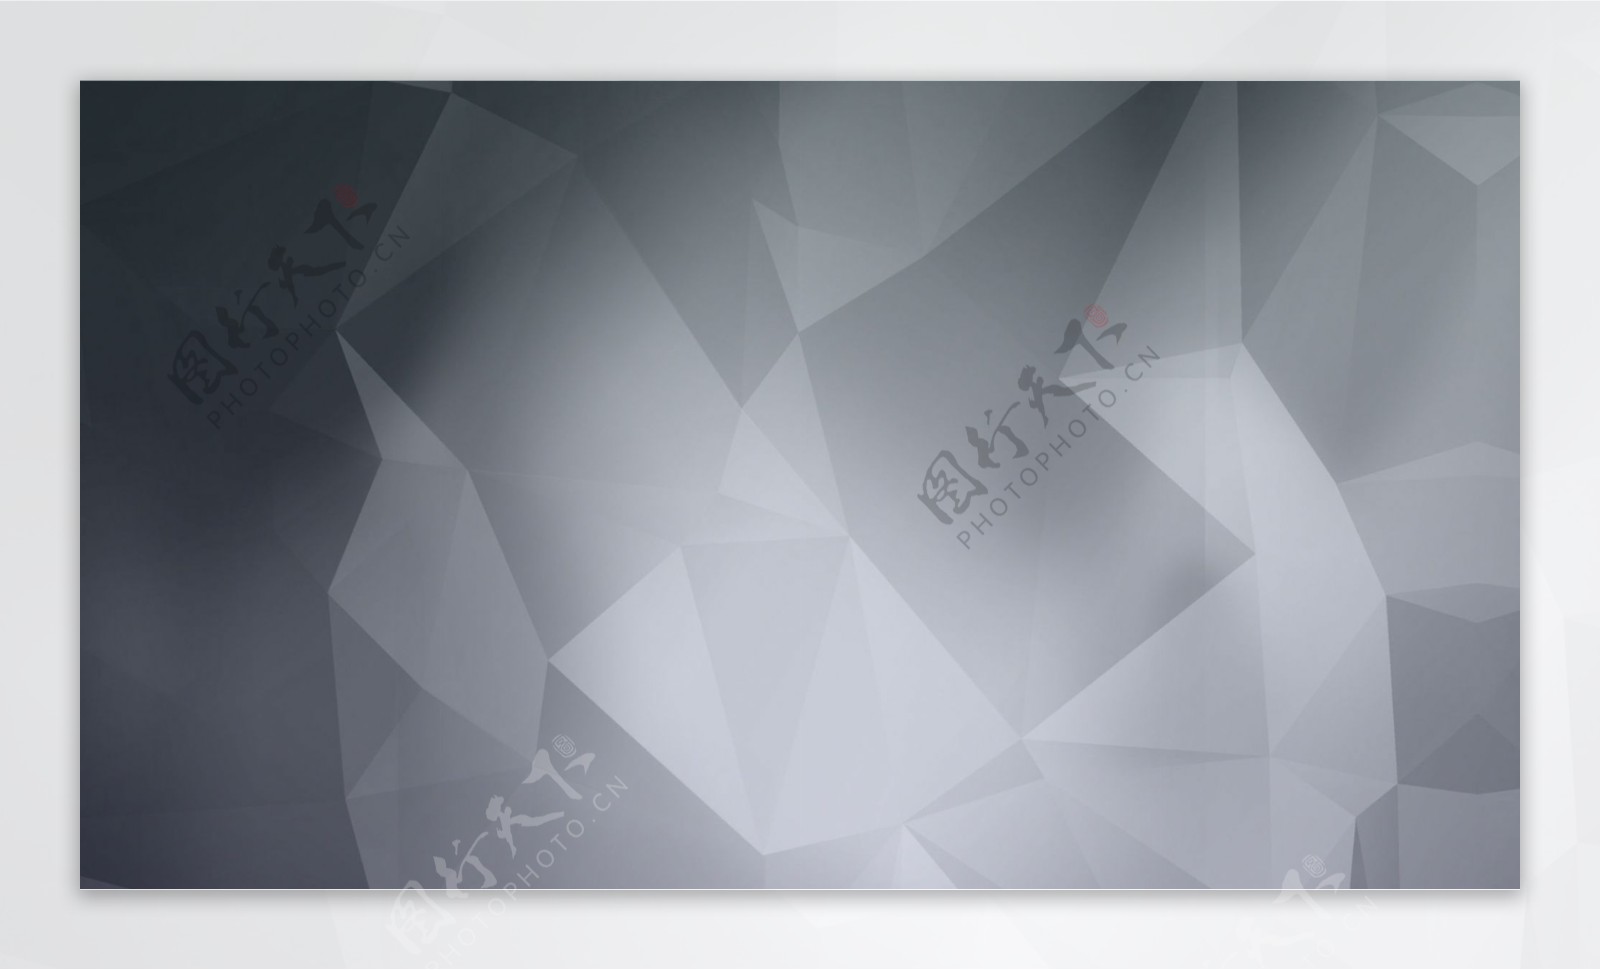 灰色酷炫晶格化抽象几何体海报背景